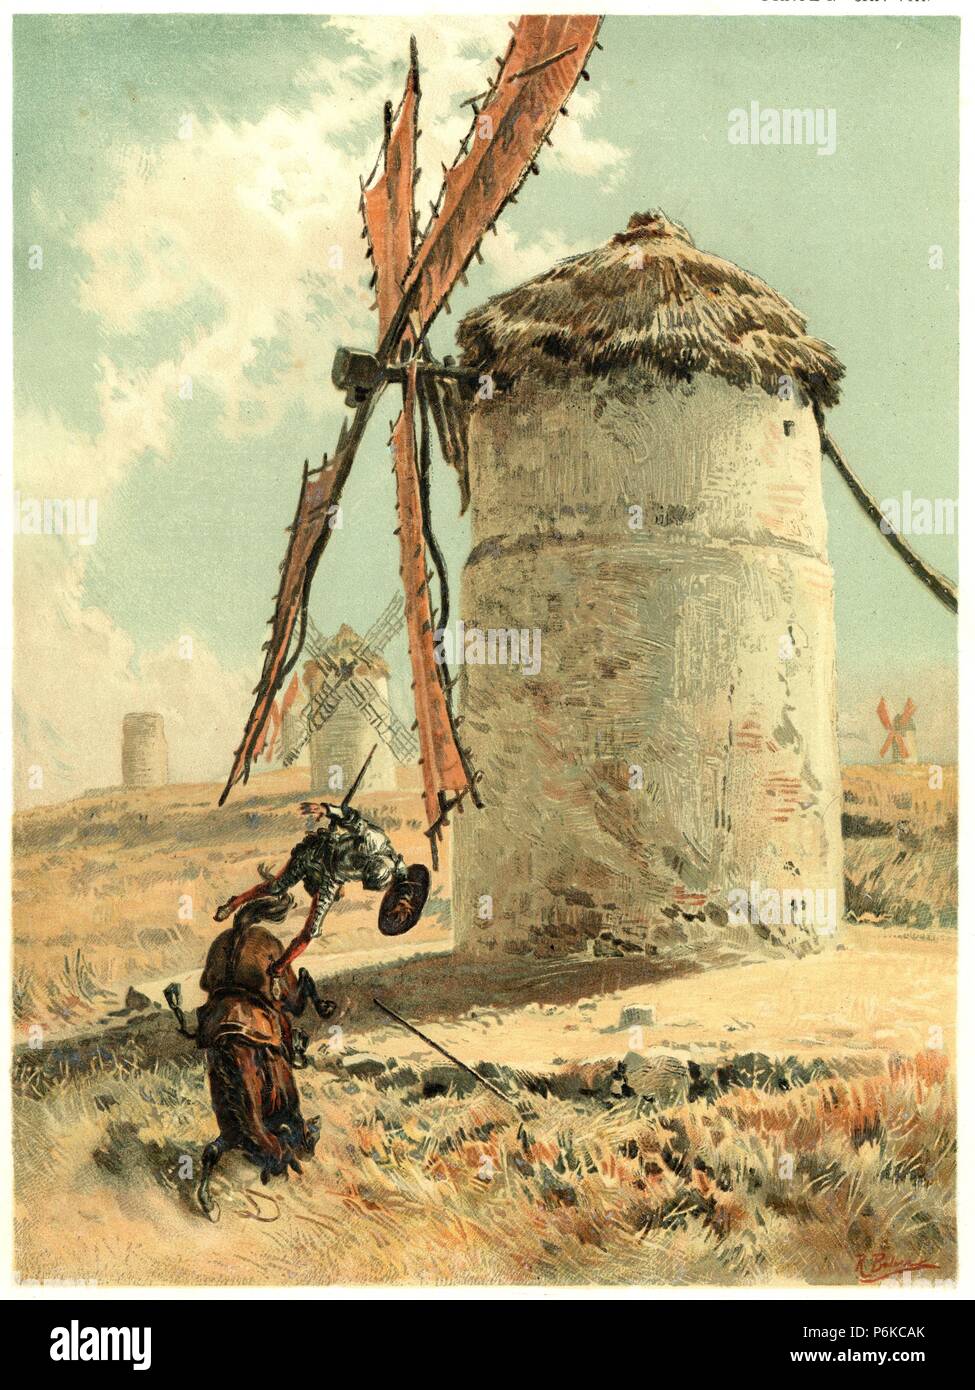 Don Quijote de la Mancha luchando contra los molinos de viento. Dibujo de R. Balaca. Años 1910. Stock Photo